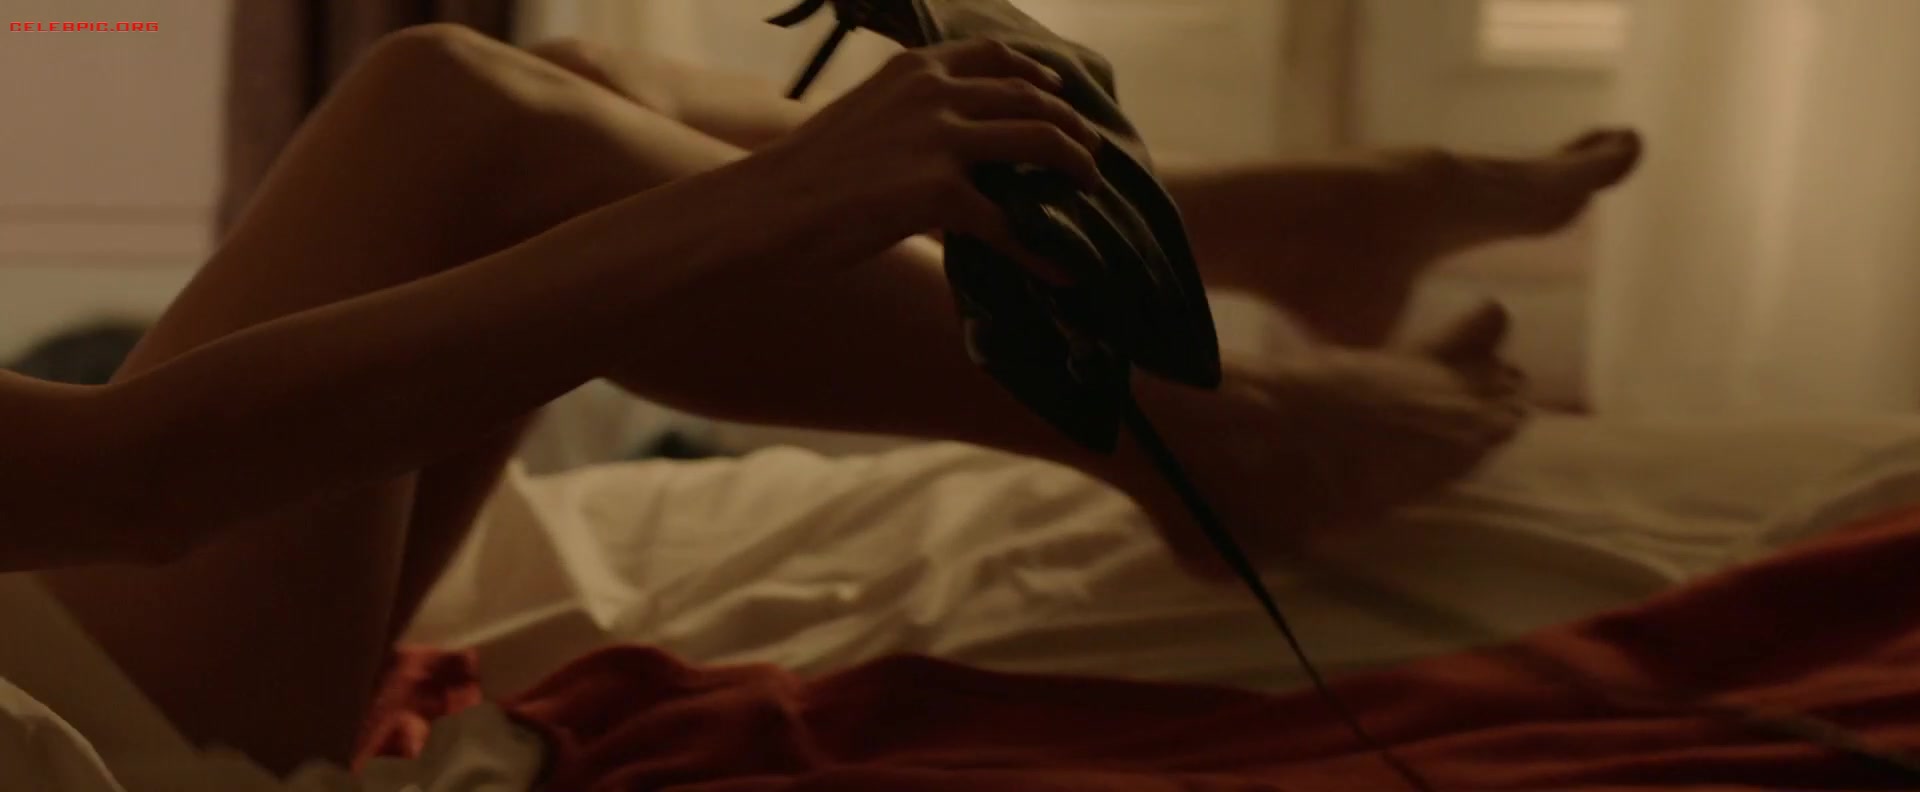 Gemma Arterton - The Escape 1080p (1) 1604.jpg